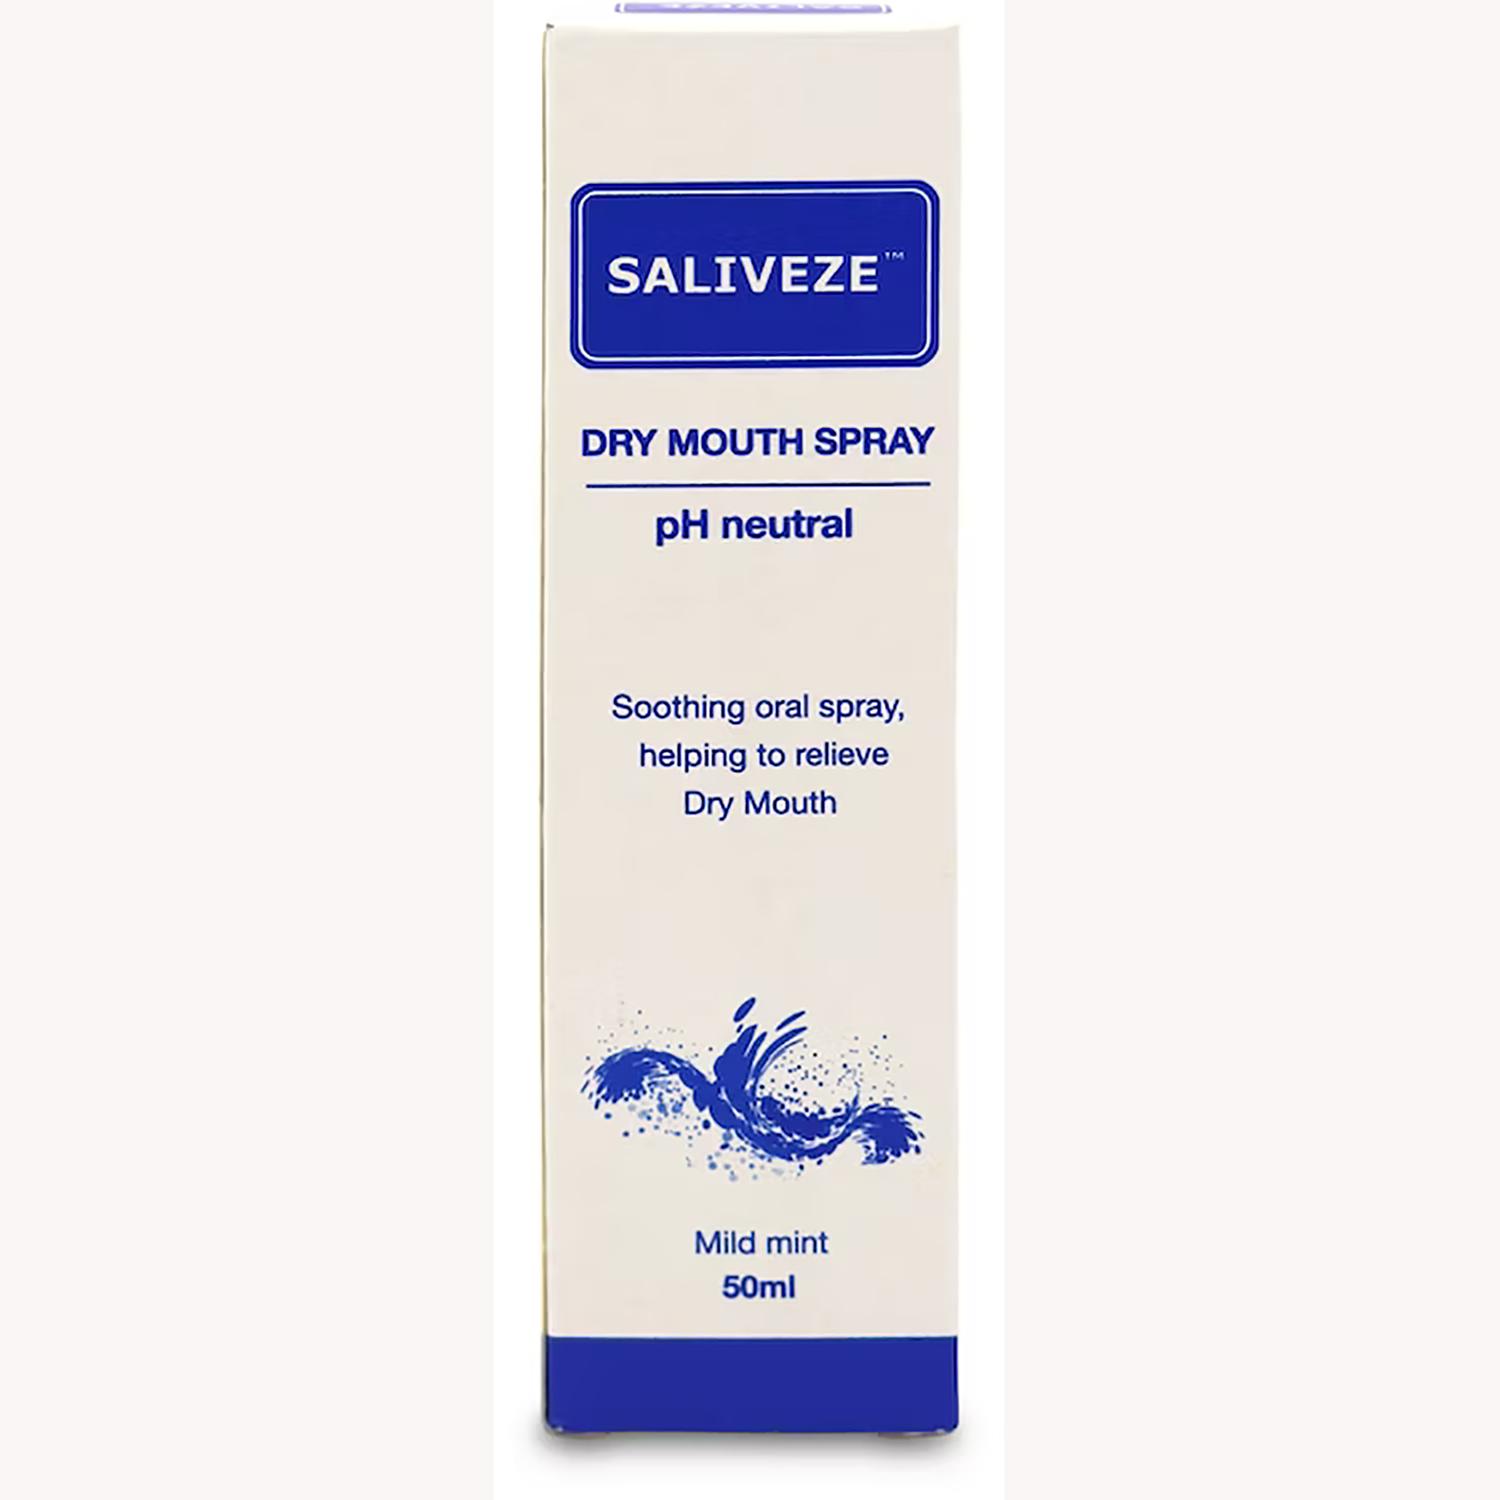 Saliveze Dry Mouth Spray | Mild Mint | 50ml | Single (1)